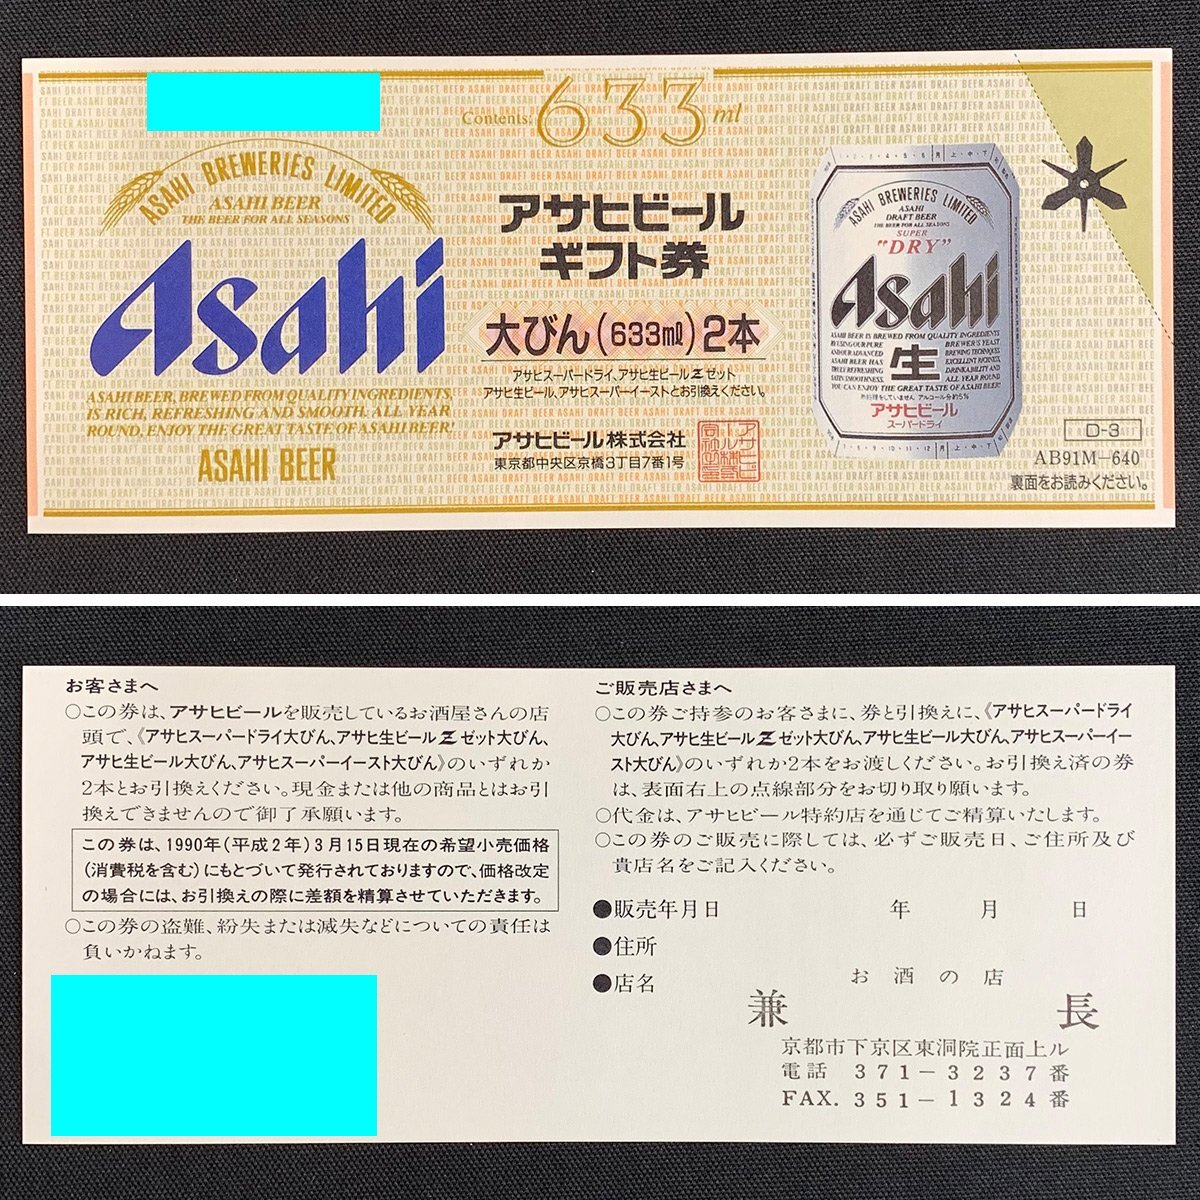 TH8y [ бесплатная доставка ] Asahi пиво подарочный сертификат ×7 листов жираф пиво подарочный сертификат ×2 листов пиво общий талон ×116 листов итого 125 листов 63,490 иен минут 